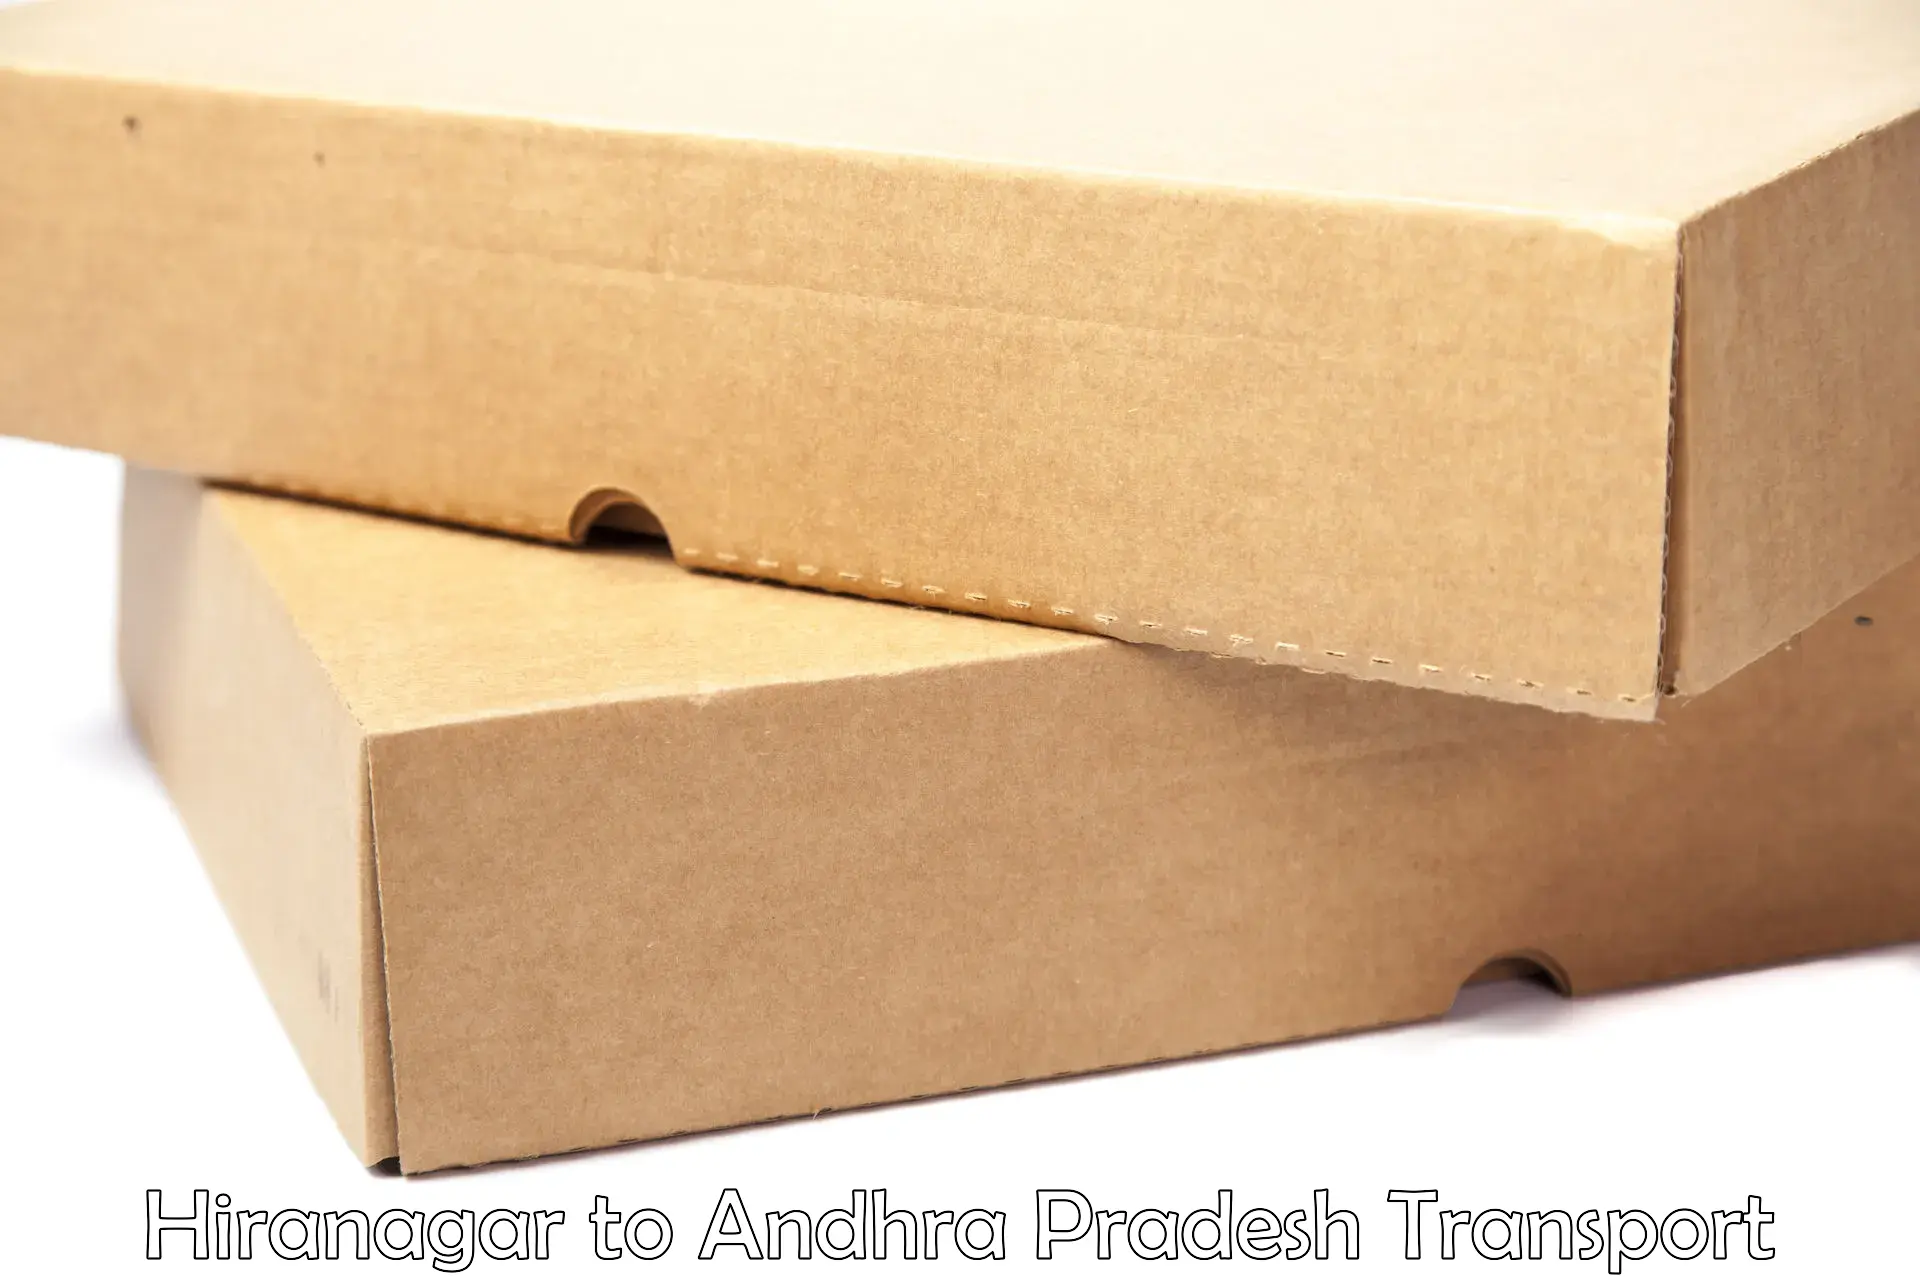 International cargo transportation services in Hiranagar to Andhra Pradesh